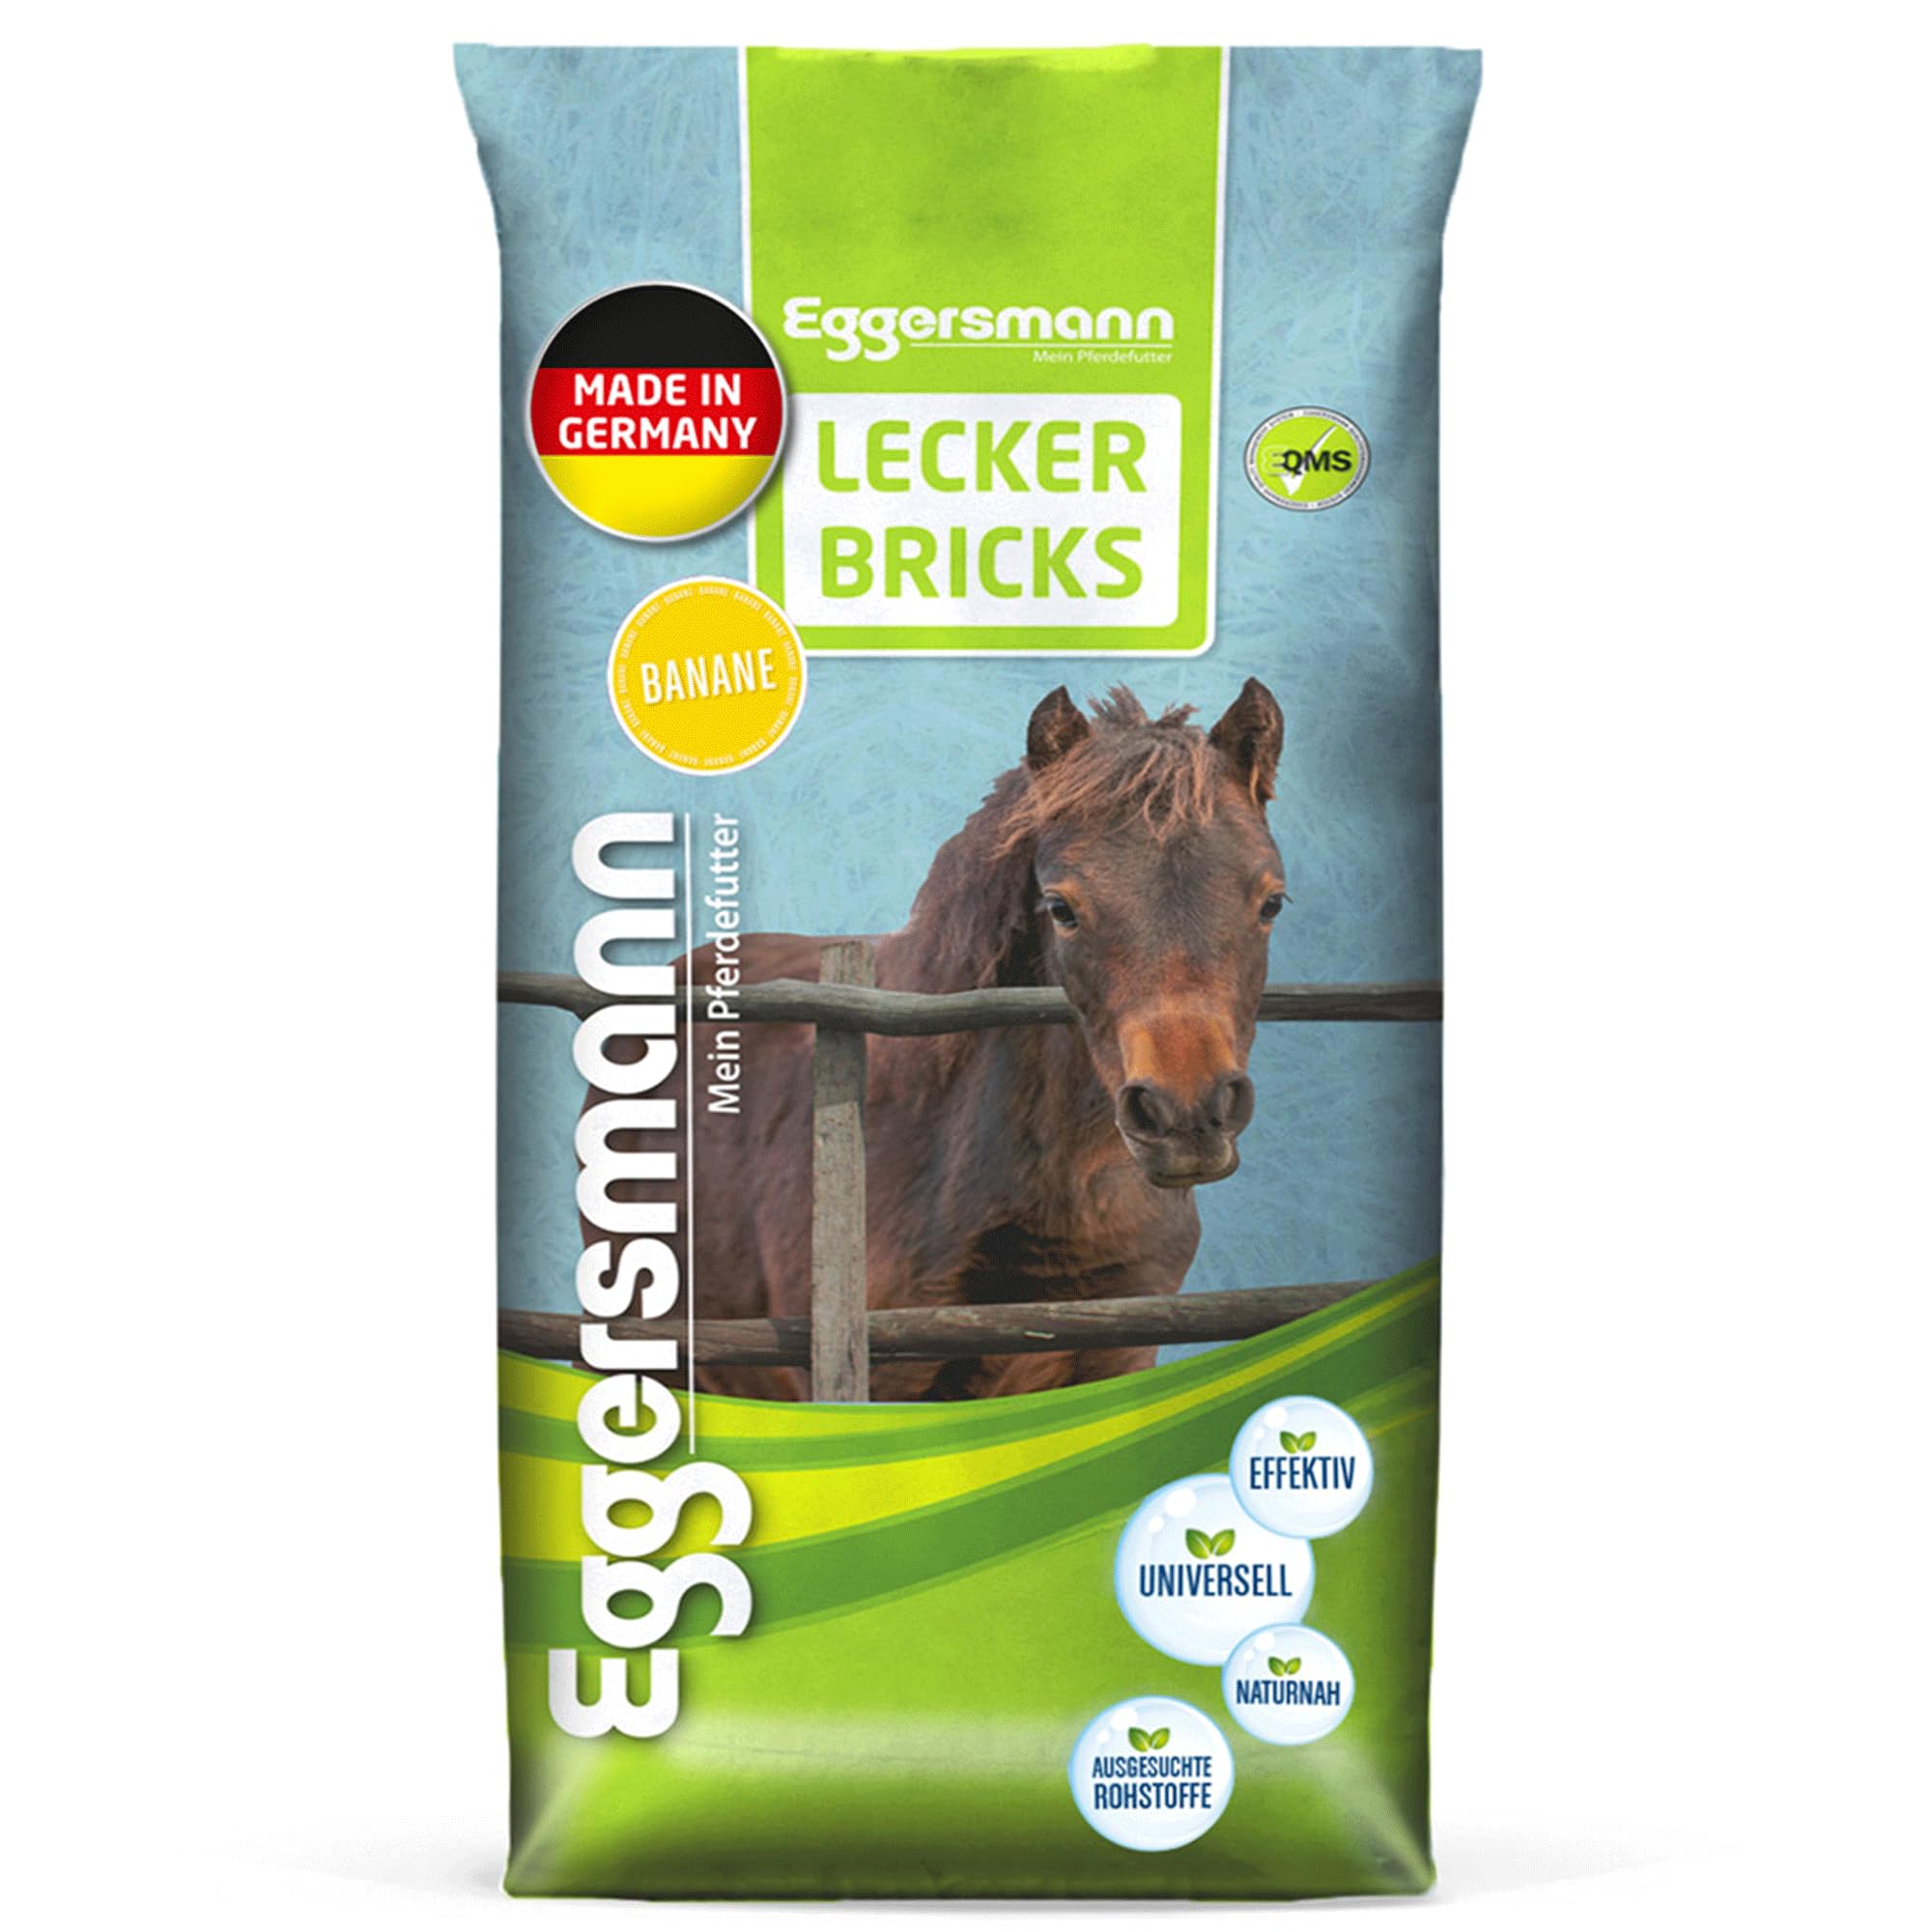 Eggersmann Mein Pferdefutter - Lecker Bricks Banane 25 kg - Leckerlies für Pferde und Ponies zur Belohnung